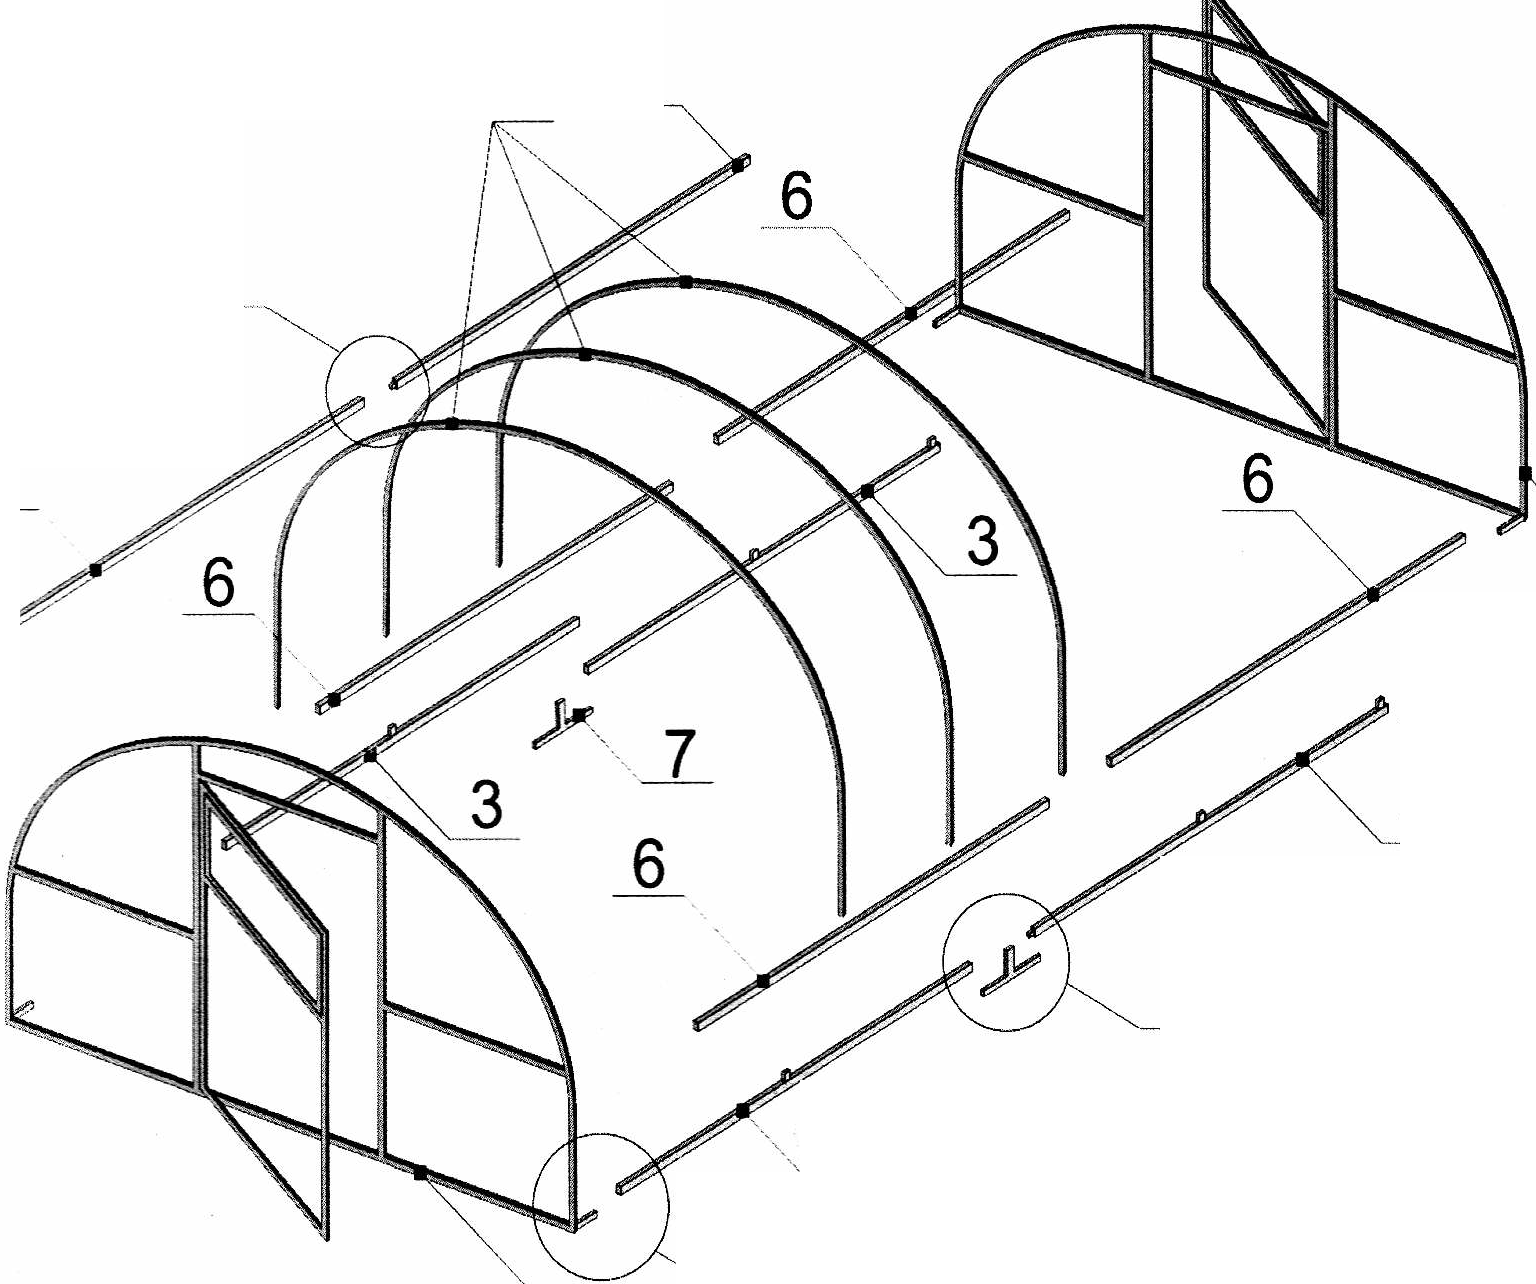 Сборка теплицы из поликарбоната — особенности монтажа конструкции своими руками